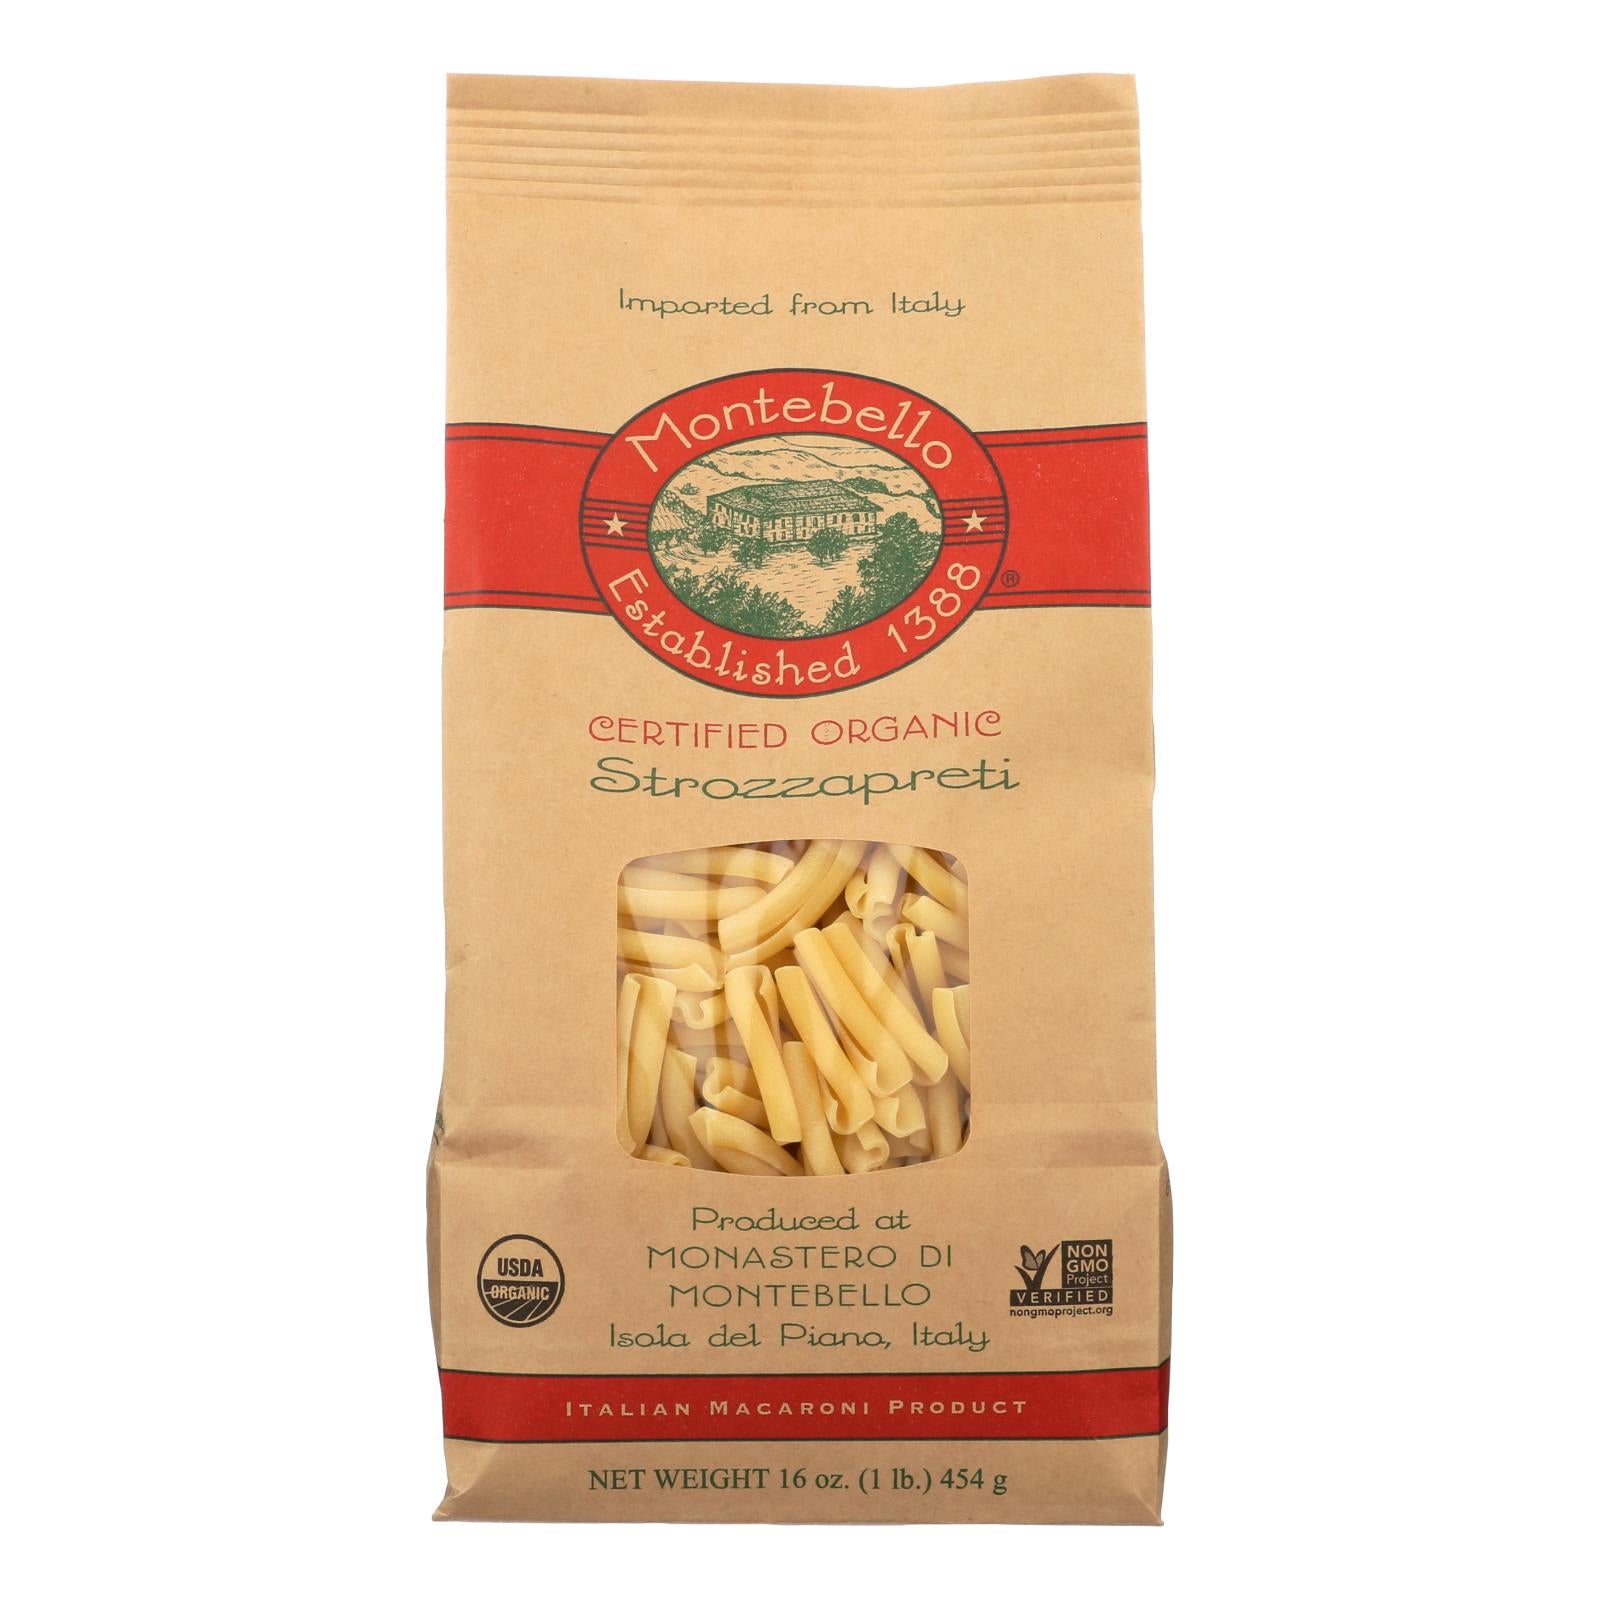 Montebello Organic Pasta - Stroz.zapreti - Case Of 12 - 1 Lb.